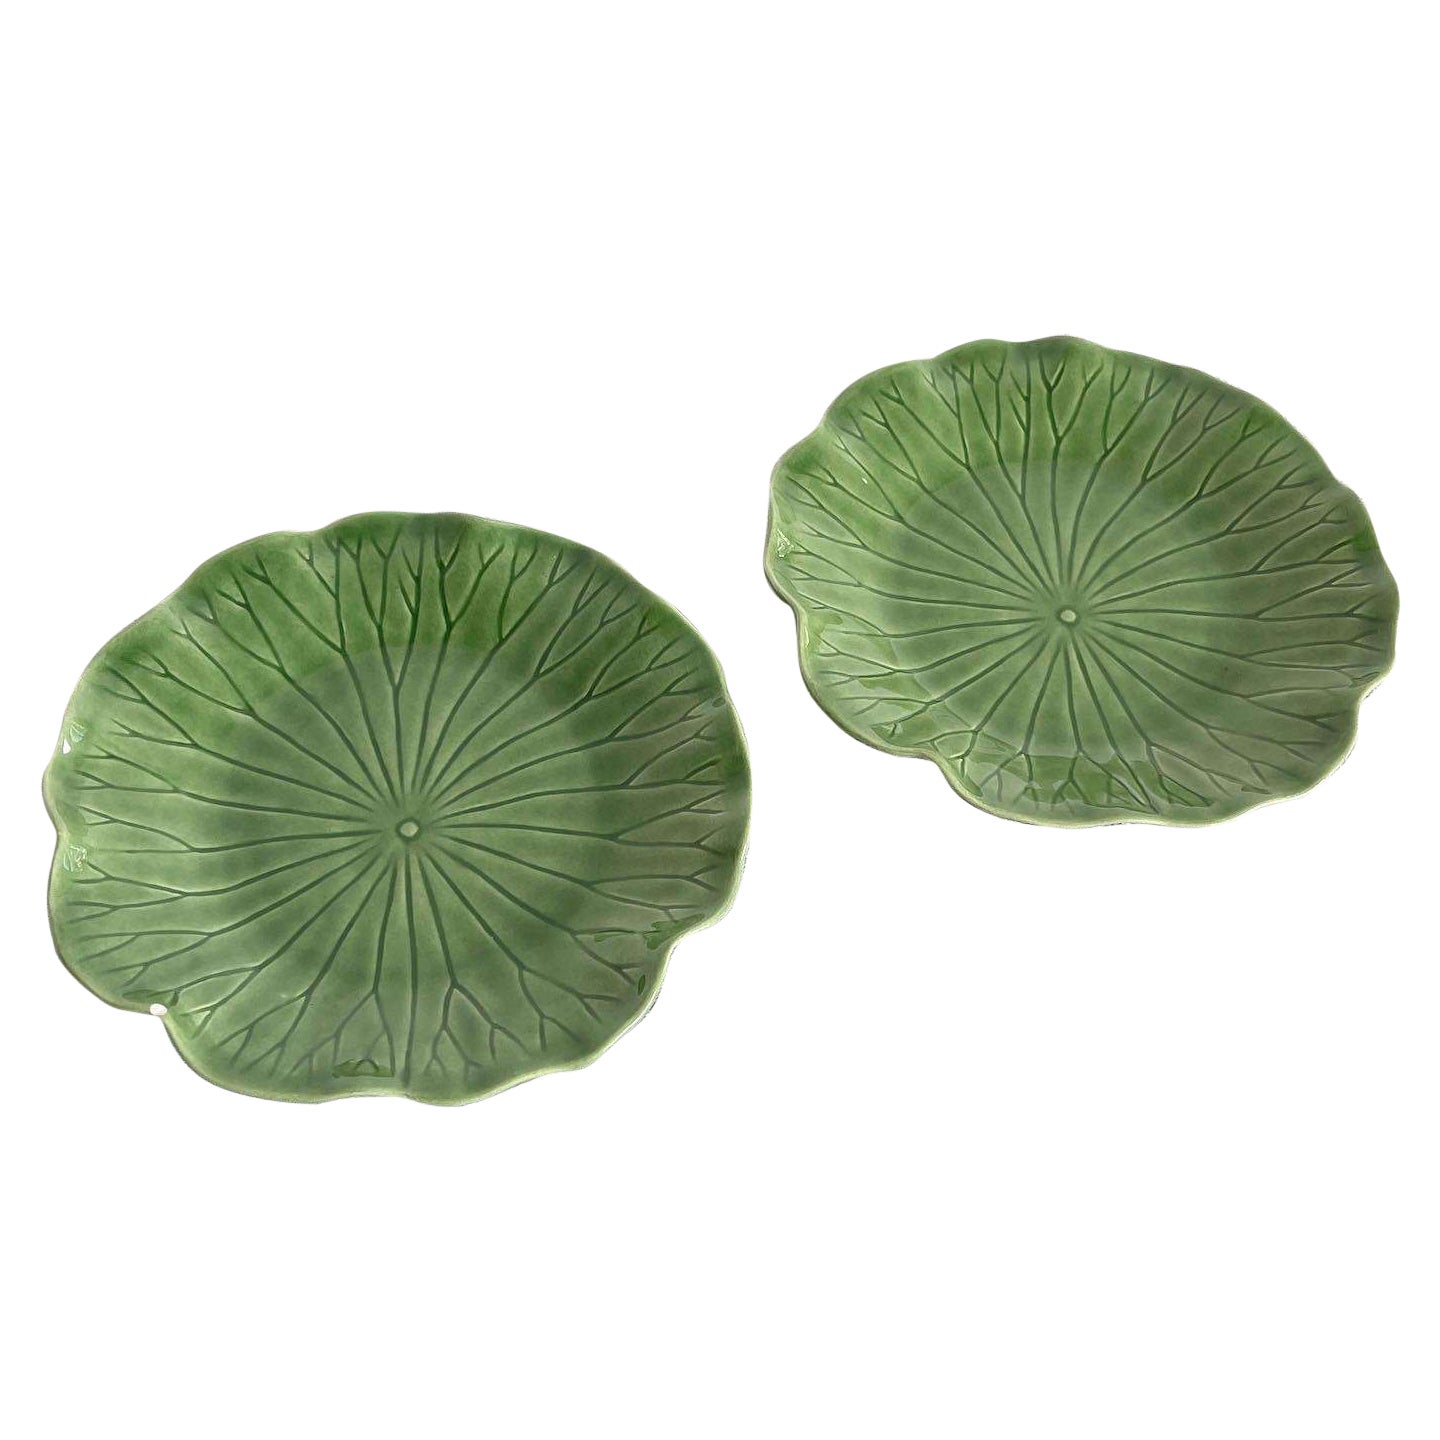 Lotusteller aus grünem Metlox mit Ppytrail-Fassung – ein Paar